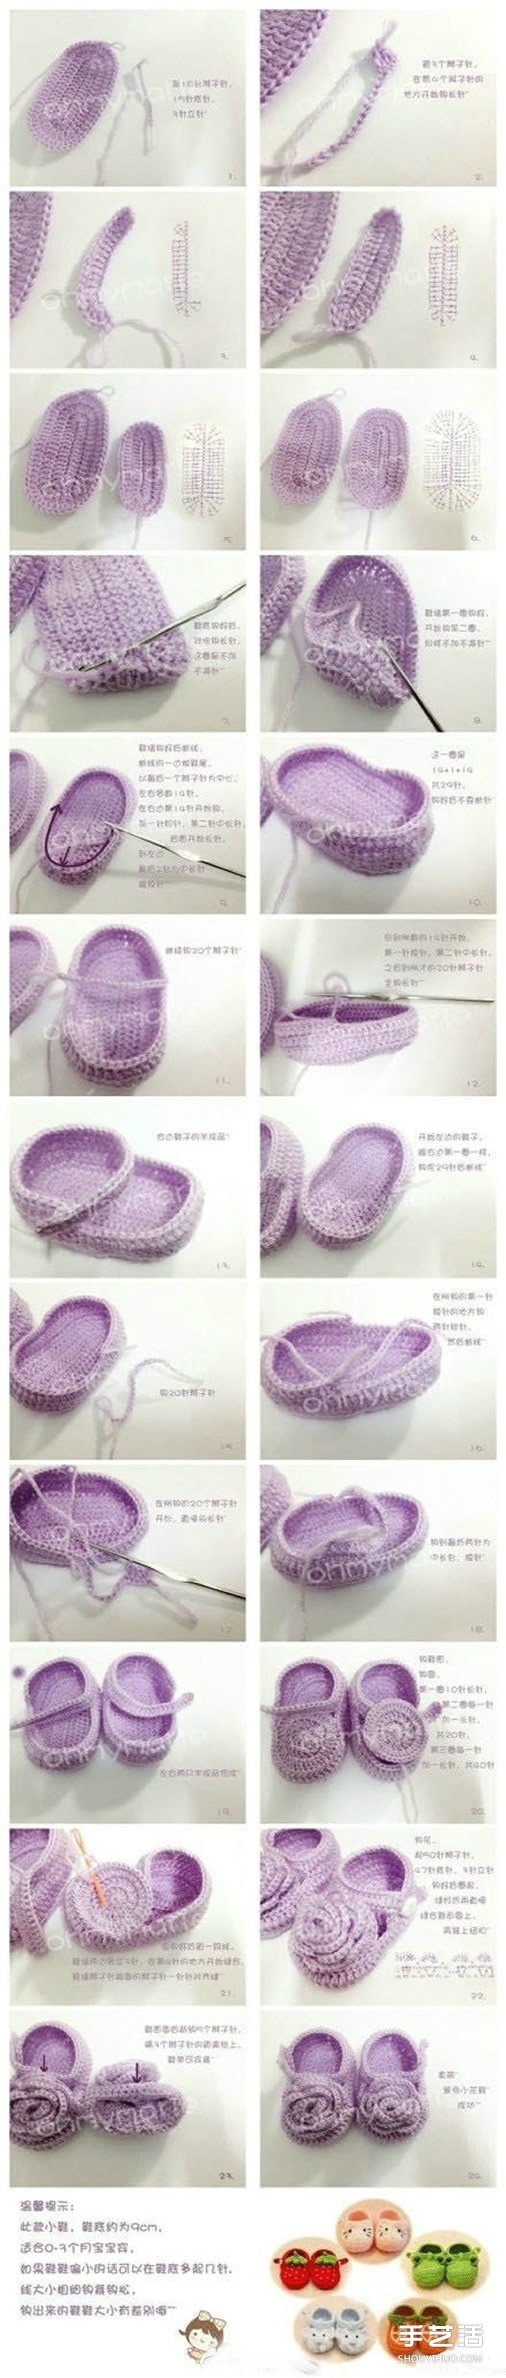 婴儿鞋的毛线编织方法 婴儿毛线鞋织法图解